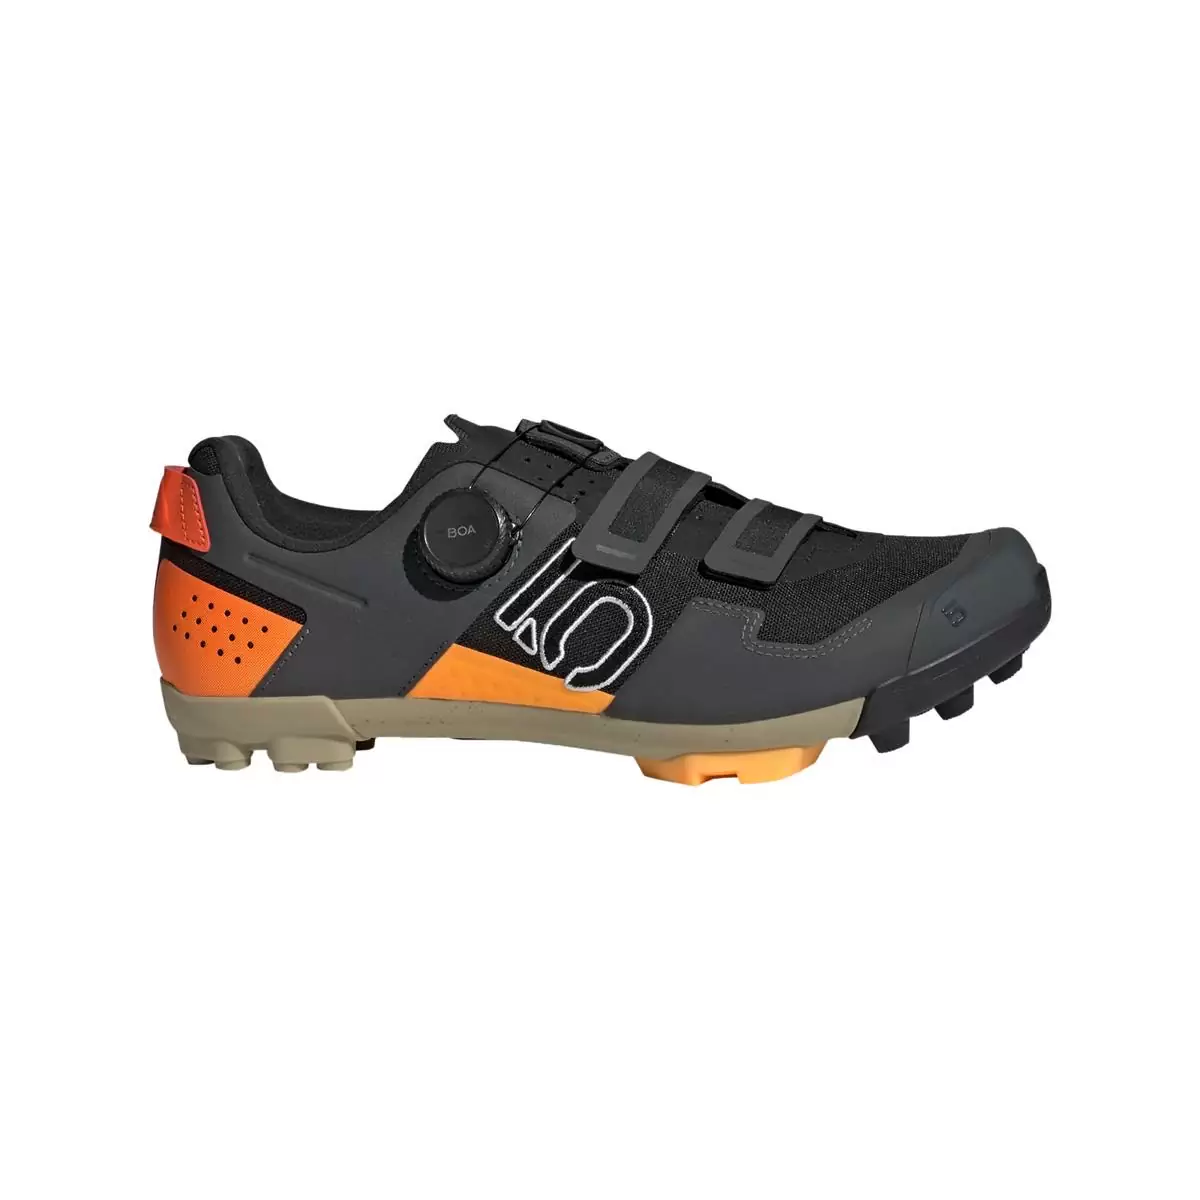 Chaussures VTT Clip 5.10 Kestrel Boa Noir/Orange Taille 41.5 - image